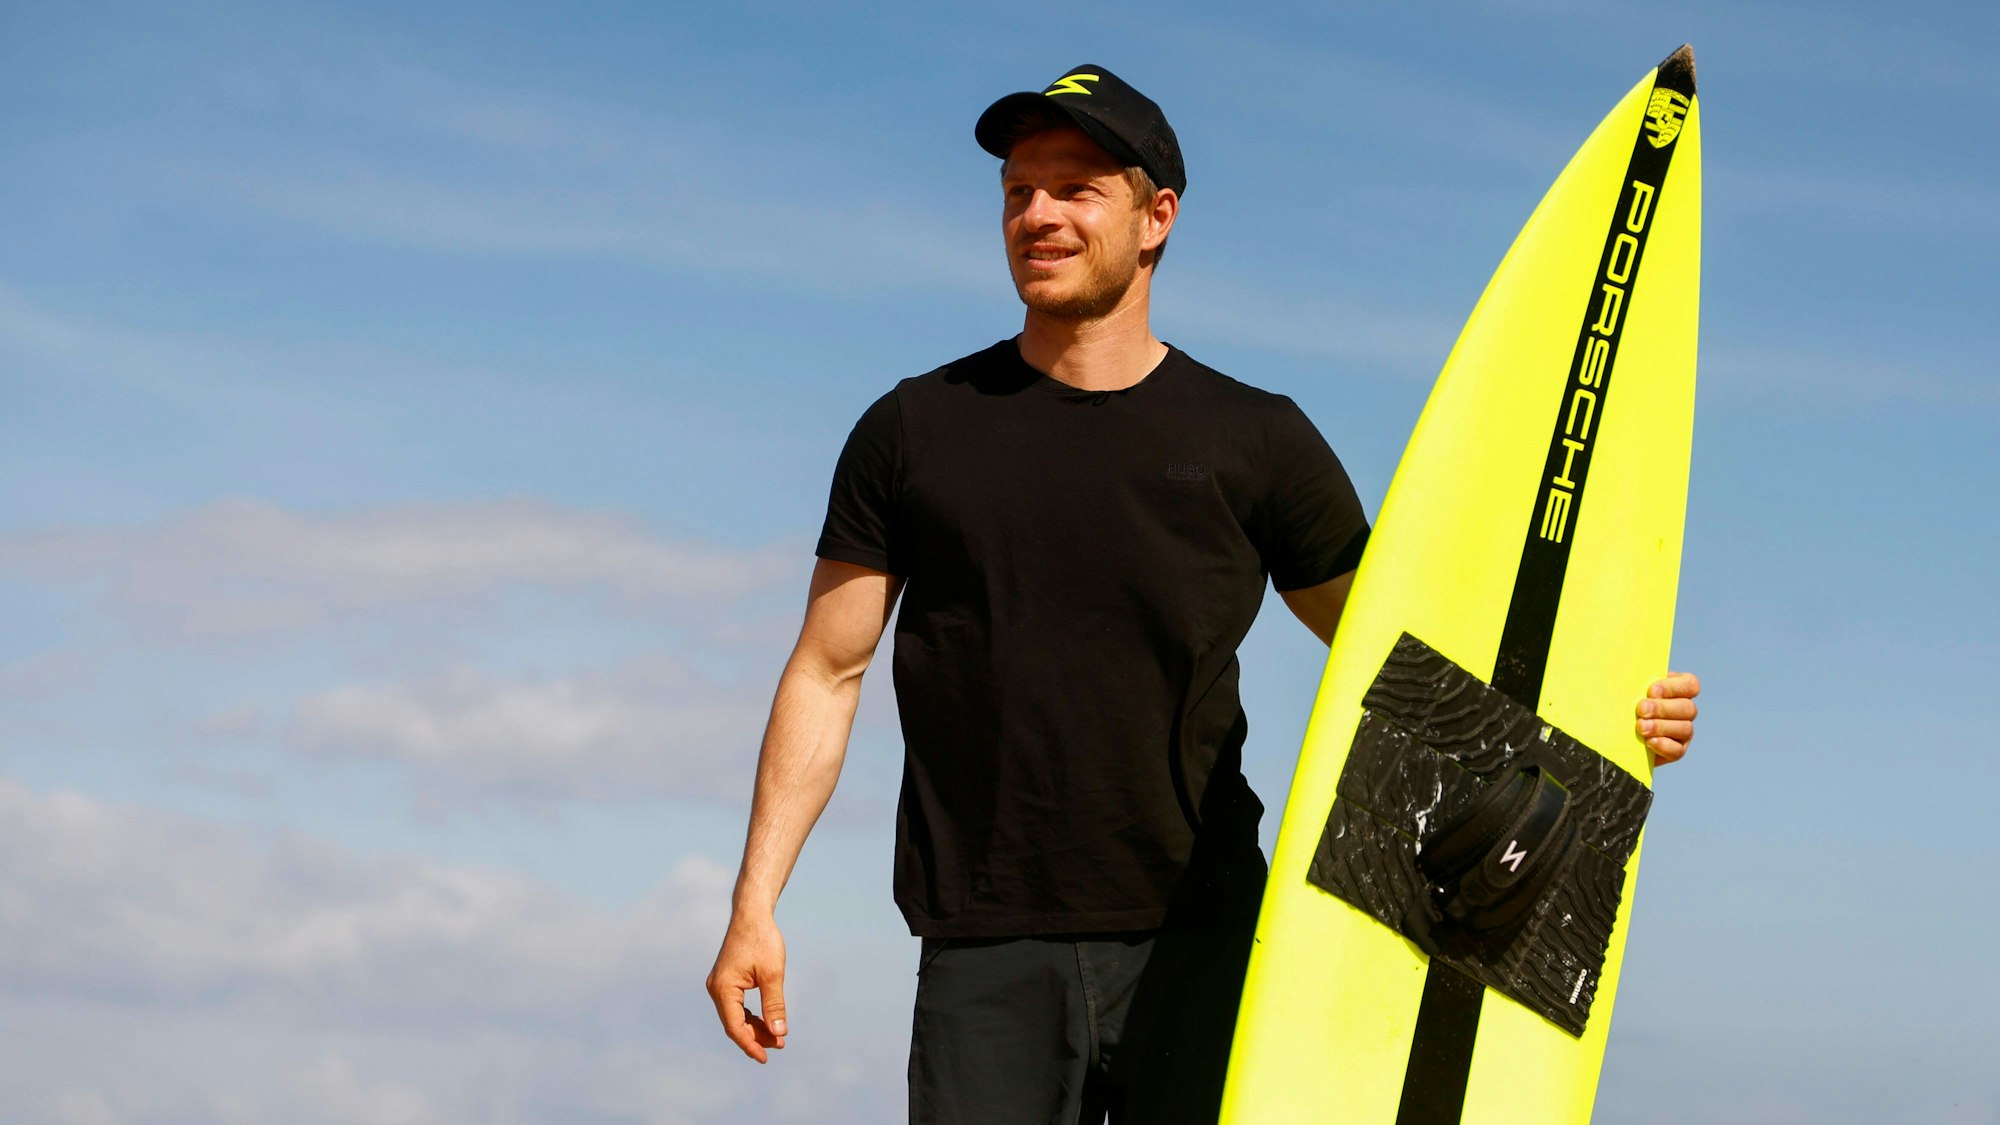 Sebastian Steudtner schaut in die Ferne – in der Hand sein Surfbrett.